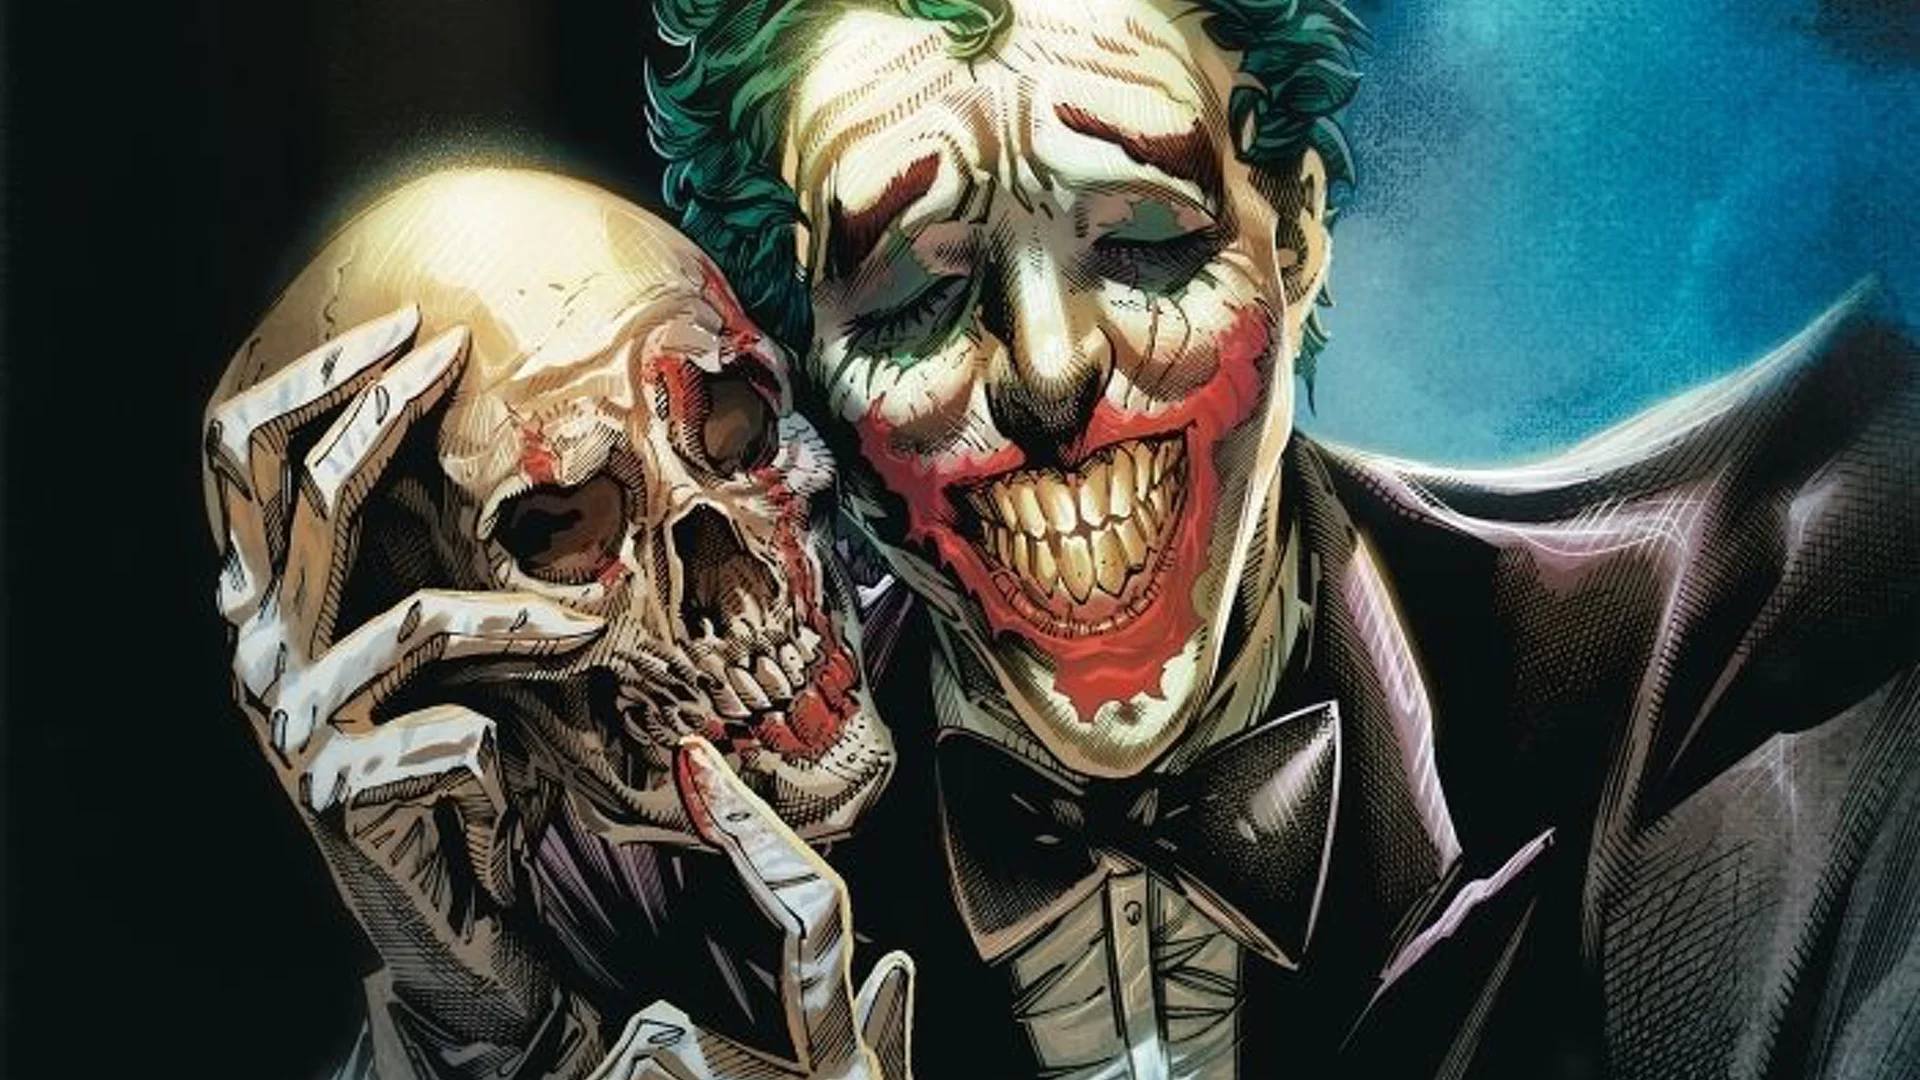 «Джокер» с Хоакином Фениксом представил более реалистичный взгляд на культового противника Бэтмена. Однако в комиксах DC у злодея есть совсем уж невероятные версии. Например, пират или лидер вампиров. И наш тест поможет узнать, кого из них напоминаешь ты!